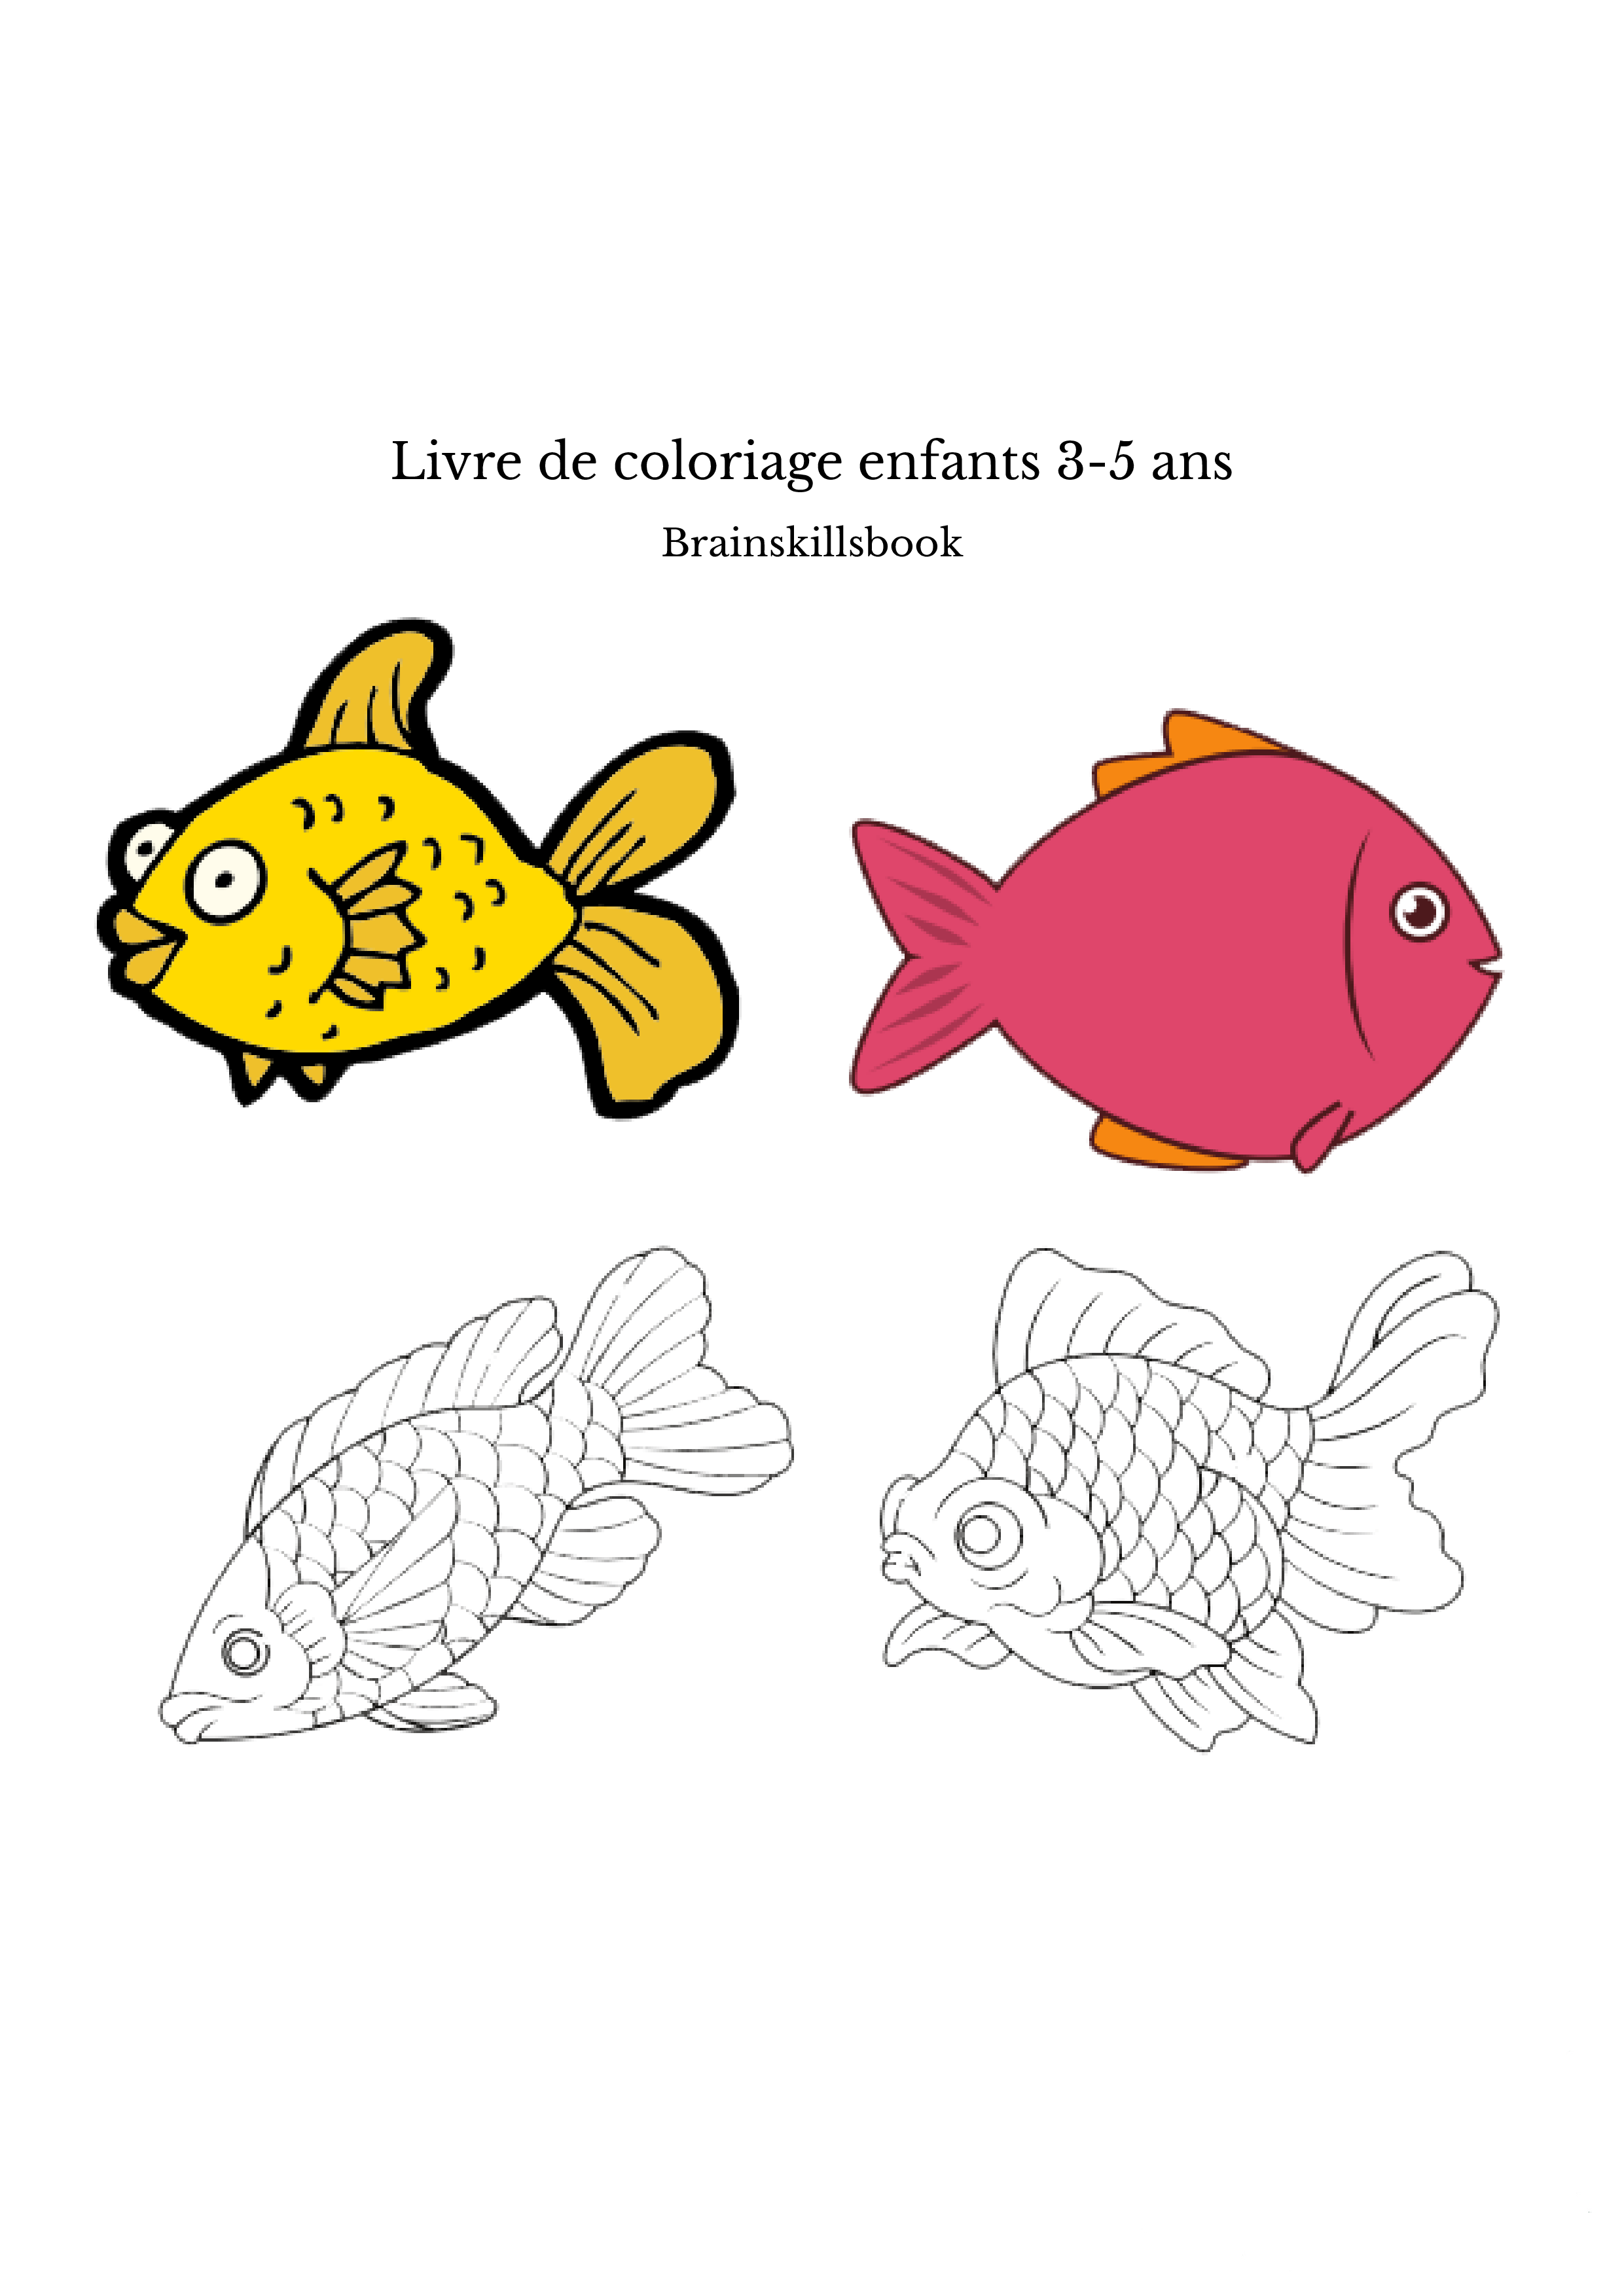 Livre de coloriage enfants 3-5 ans - Abdellatif El alama